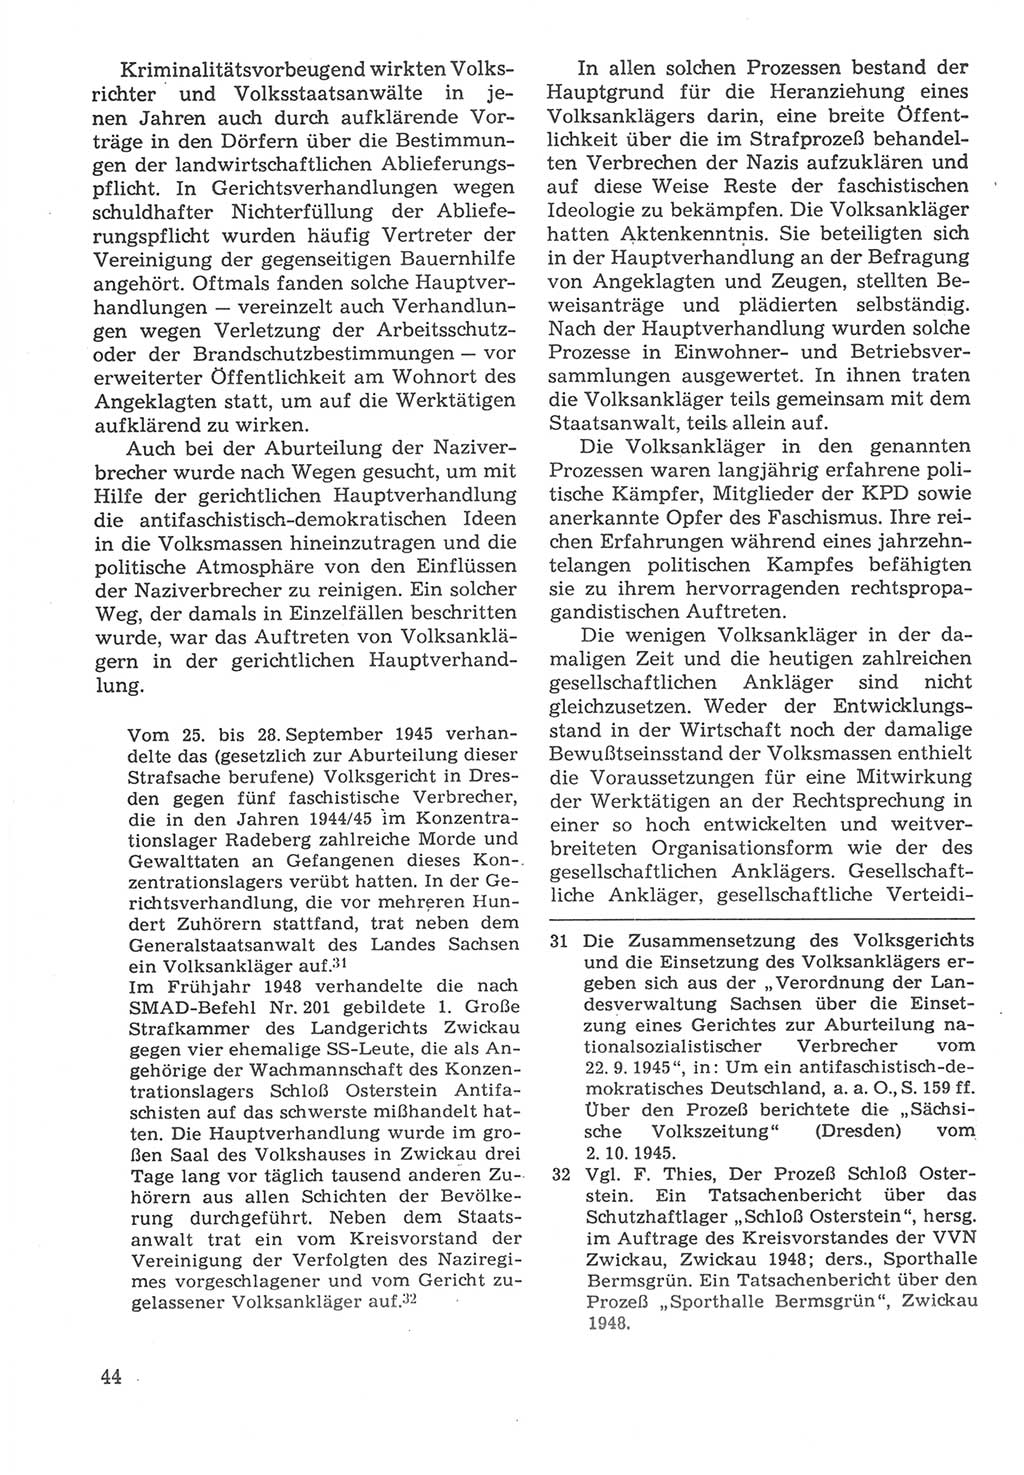 Strafverfahrensrecht [Deutsche Demokratische Republik (DDR)], Lehrbuch 1987, Seite 44 (Strafverf.-R. DDR Lb. 1987, S. 44)